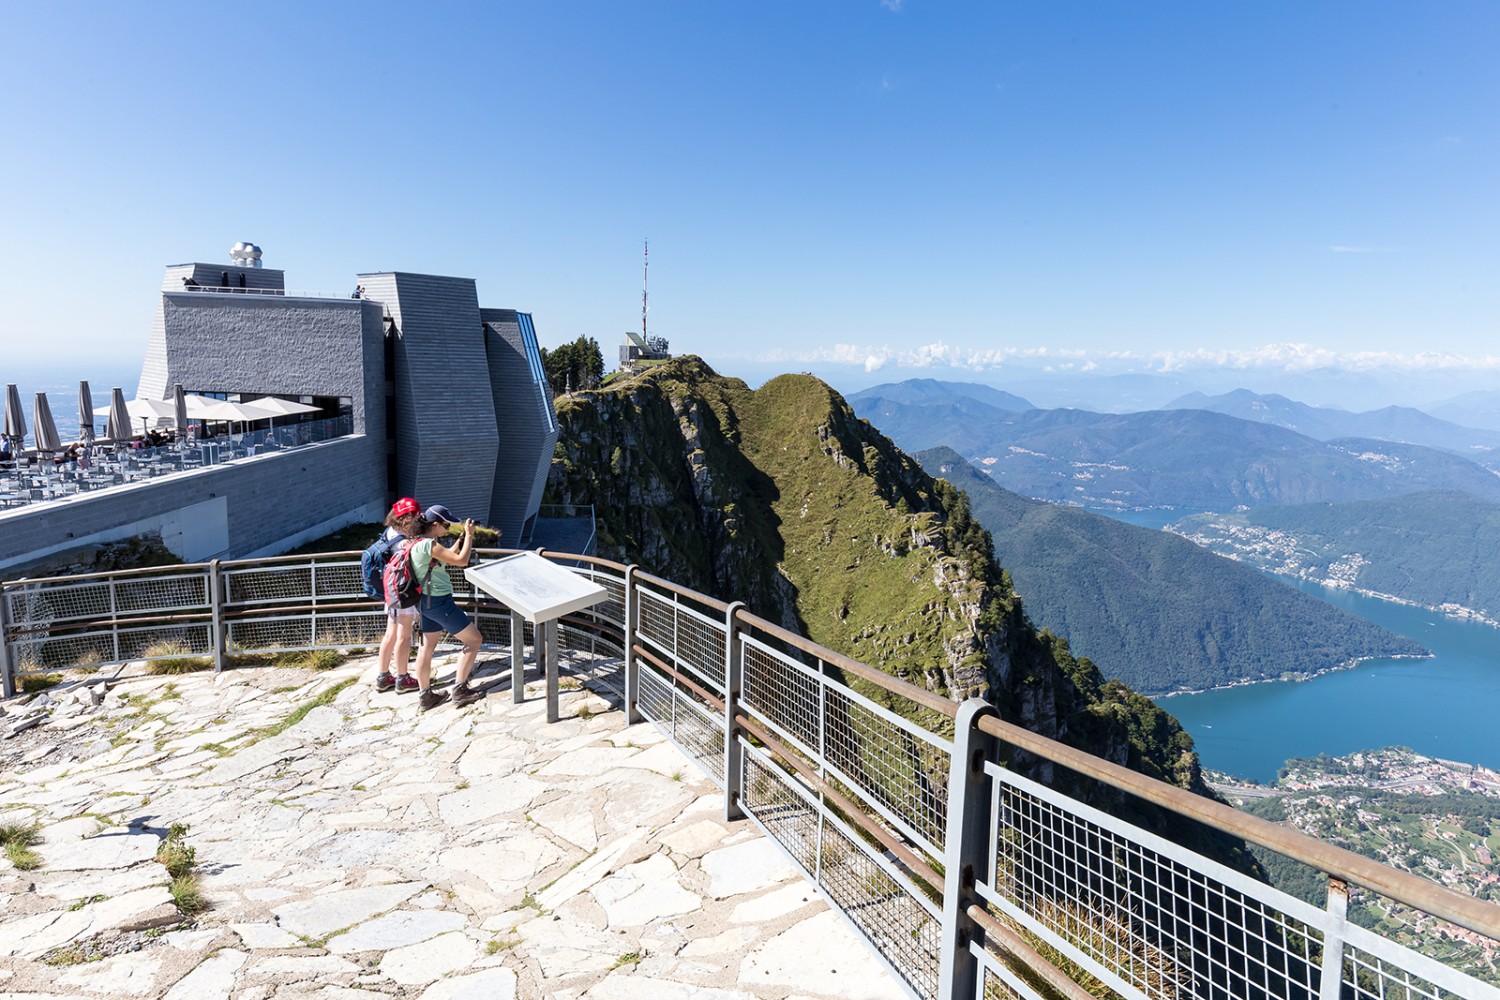 La migliore vista del Ticino dalle rocce su cui si erge il «Fiore di pietra» firmato Mario Botta. Immagini: Daniel Fleuti